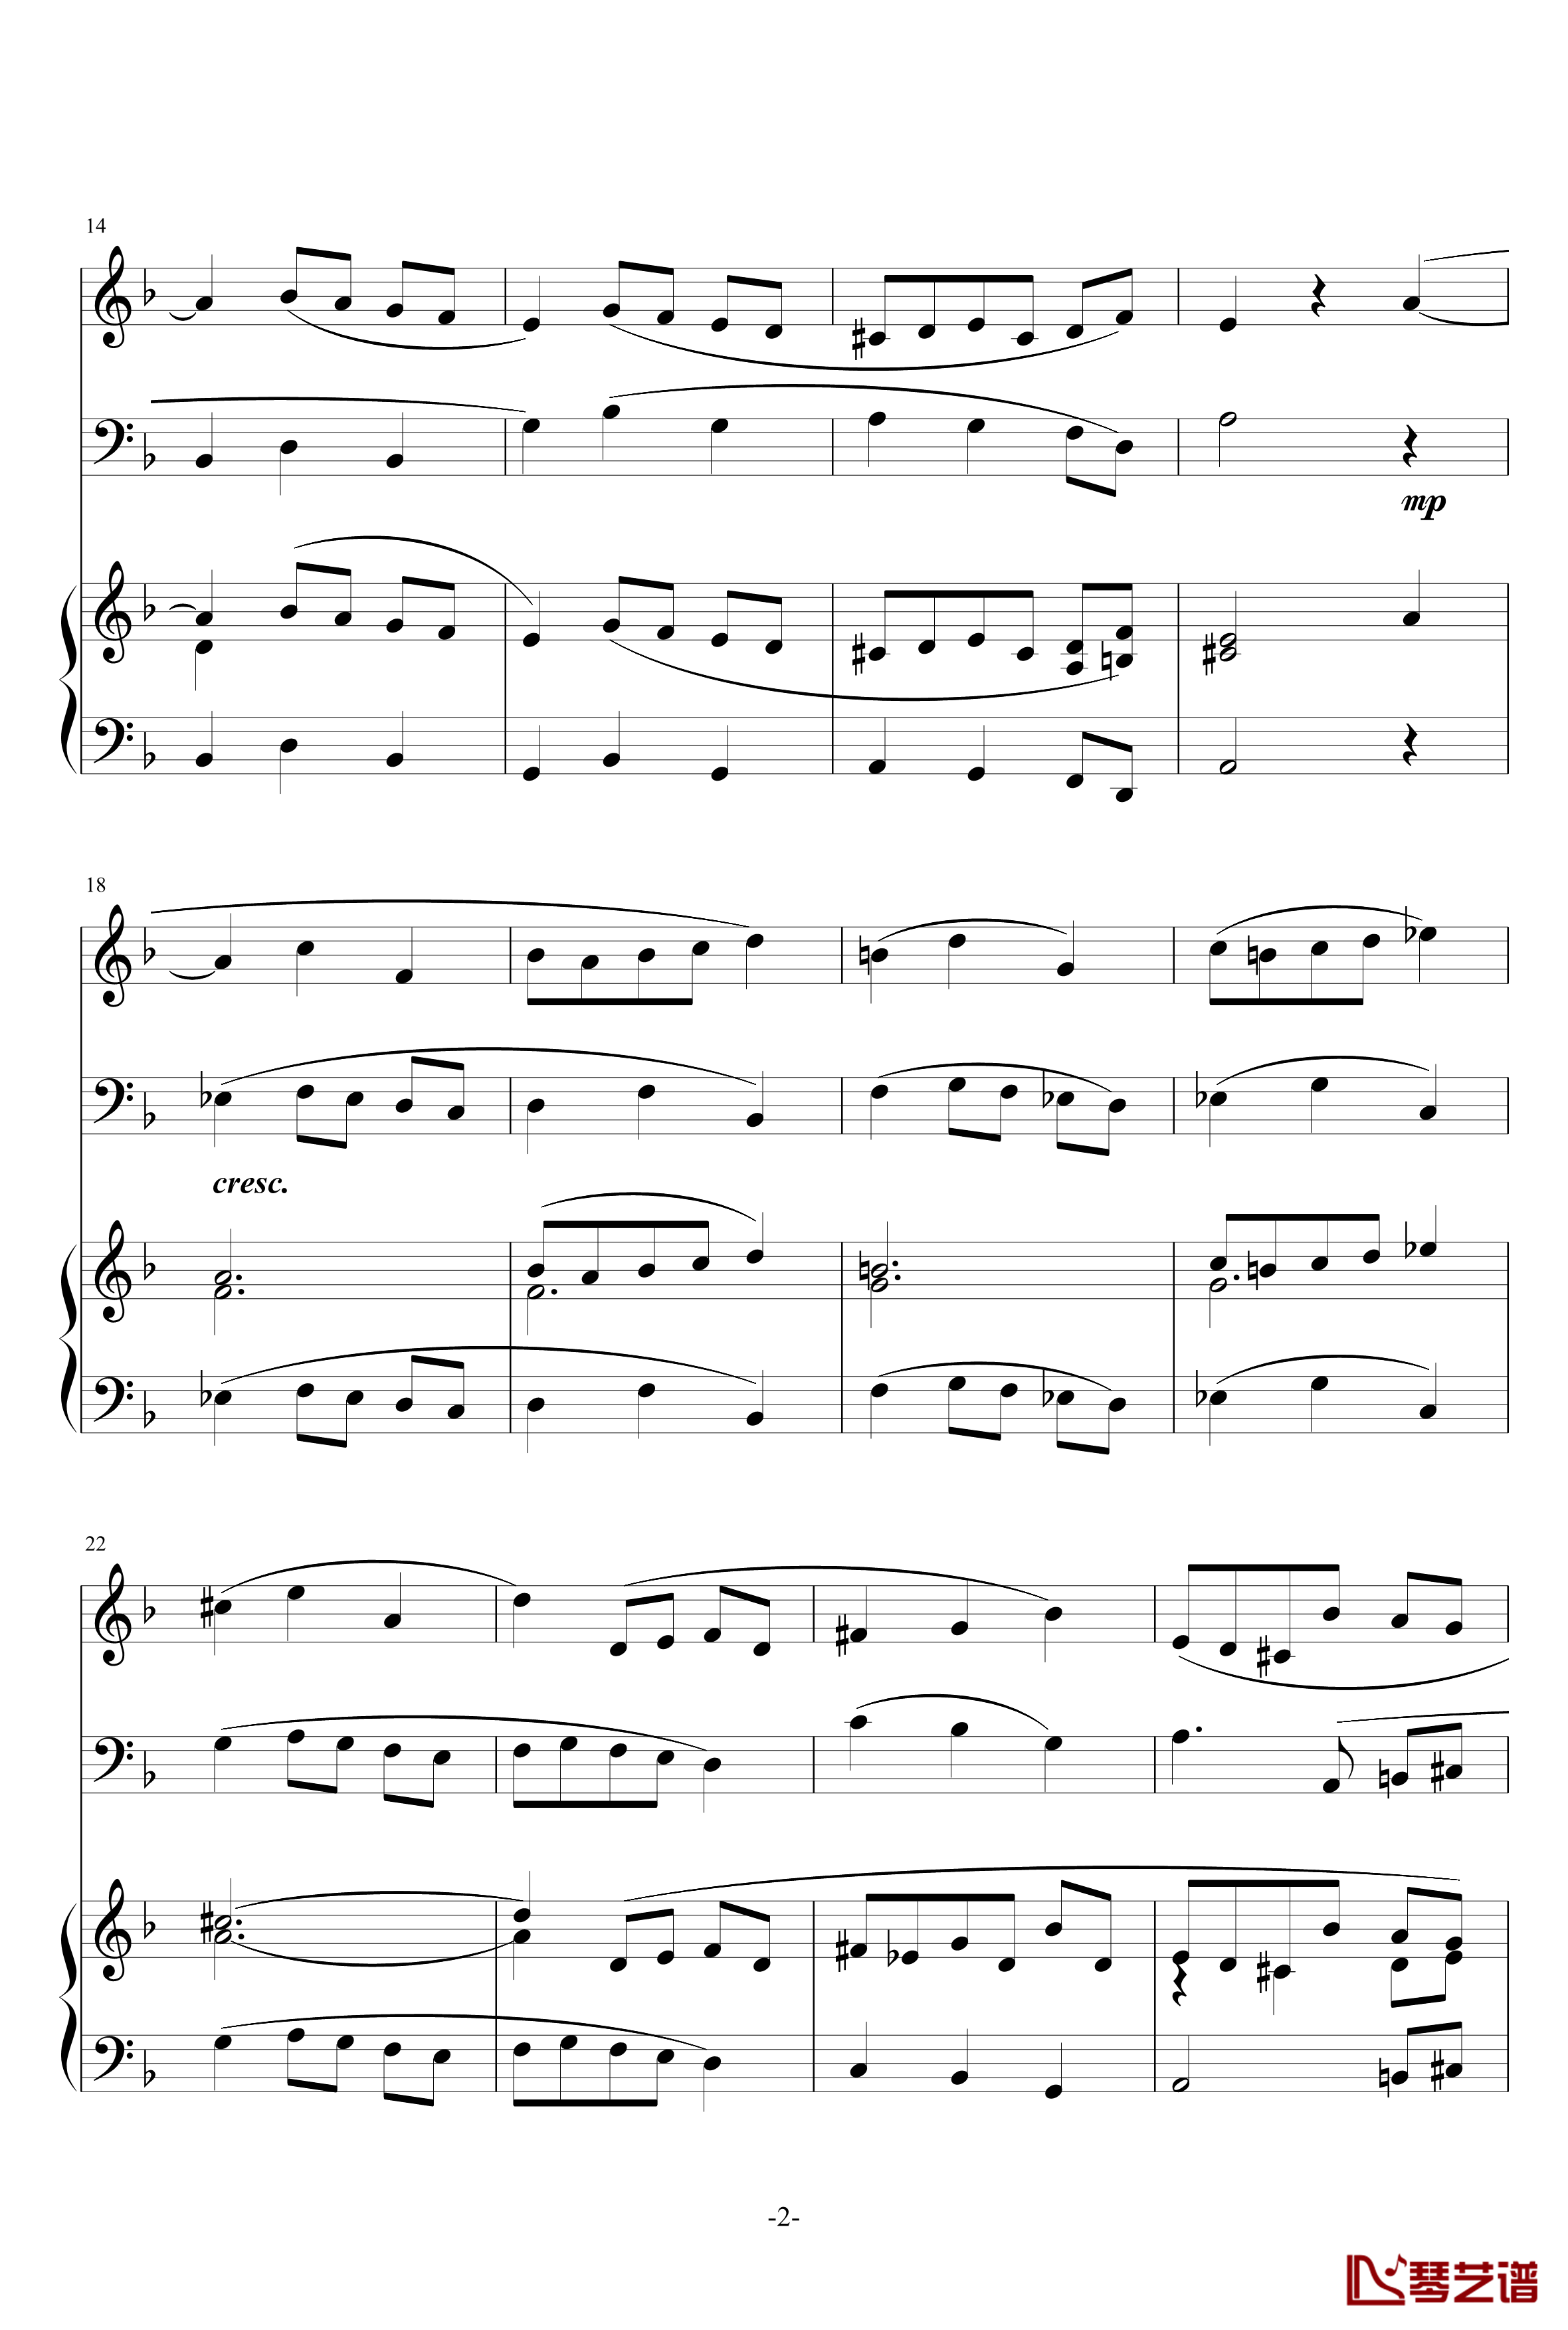 巴洛克风格小提琴协奏曲第一乐章钢琴谱-巴洛克2